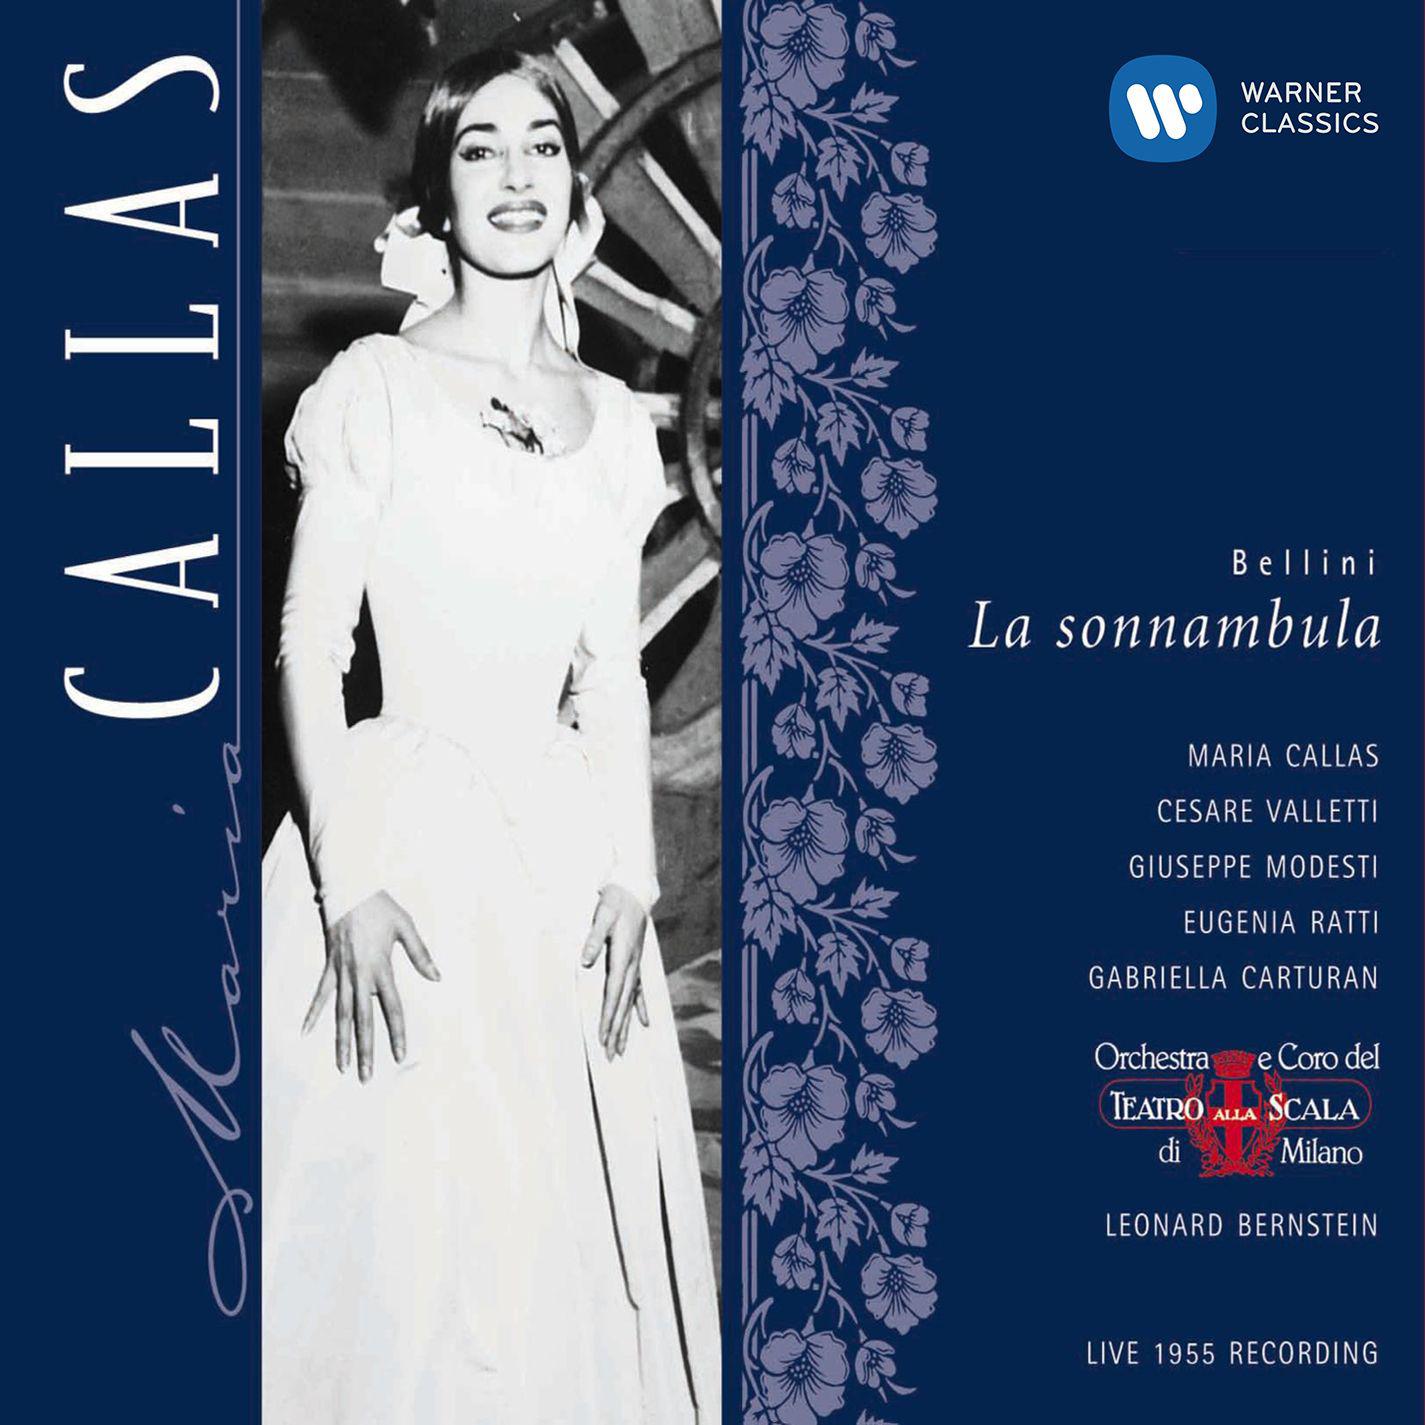 Maria Callas - La sonnambula (2002 Remastered Version), Act II, Scene 2:No, più non reggo (Elvino/Amina/Rodolfo/Coro)